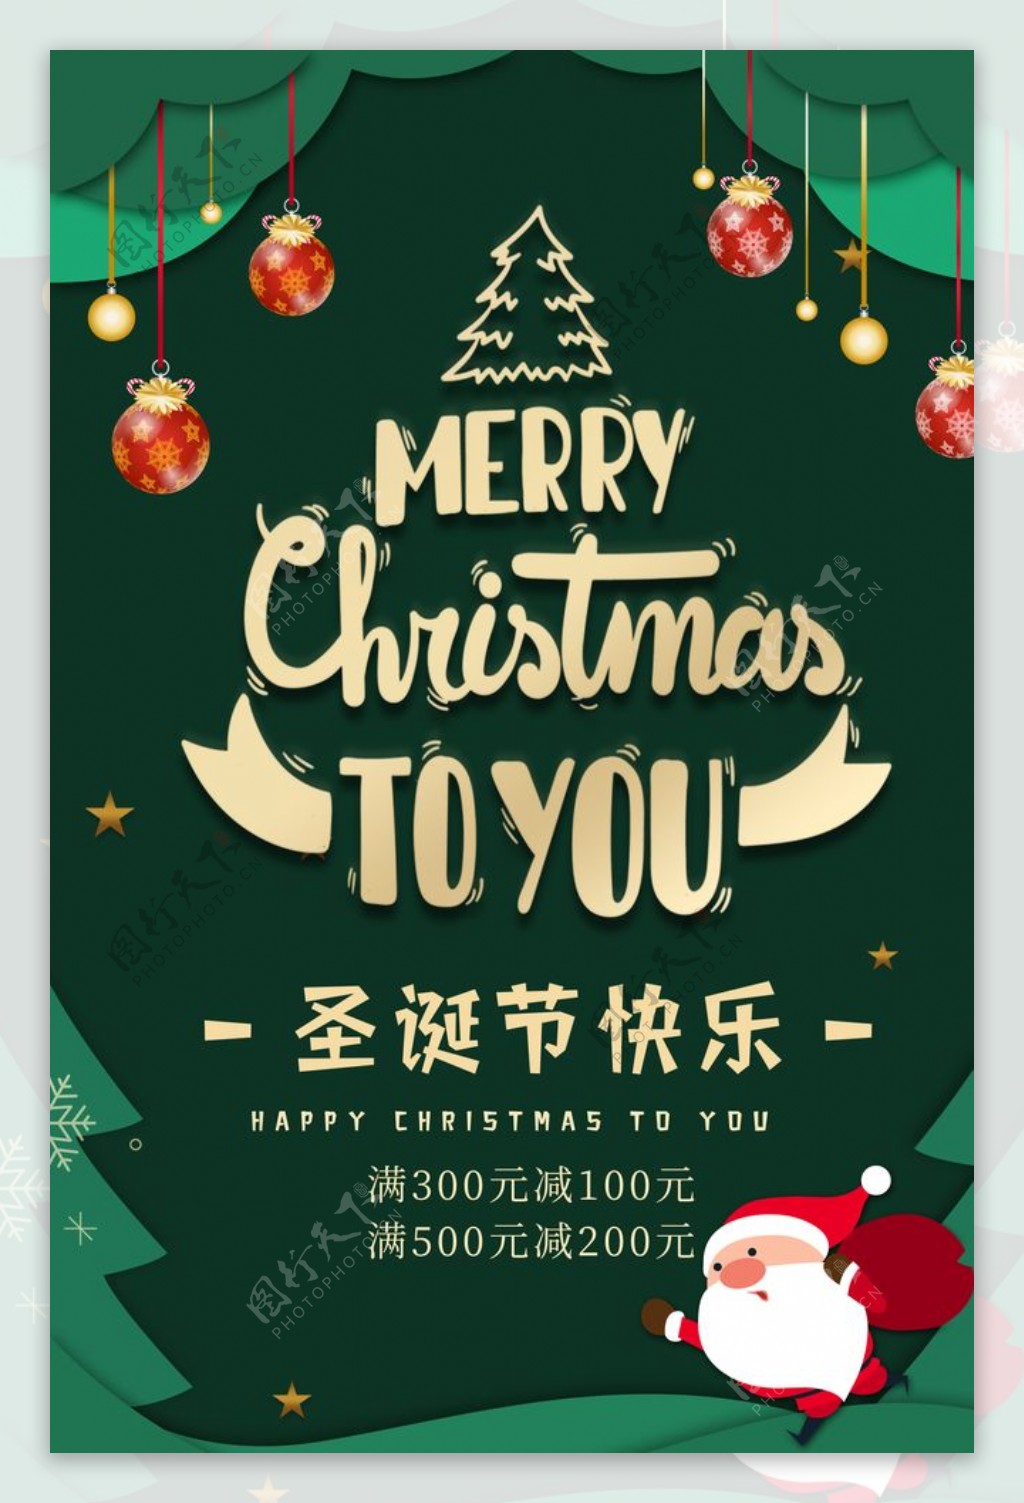 圣诞节快乐促销海报图片